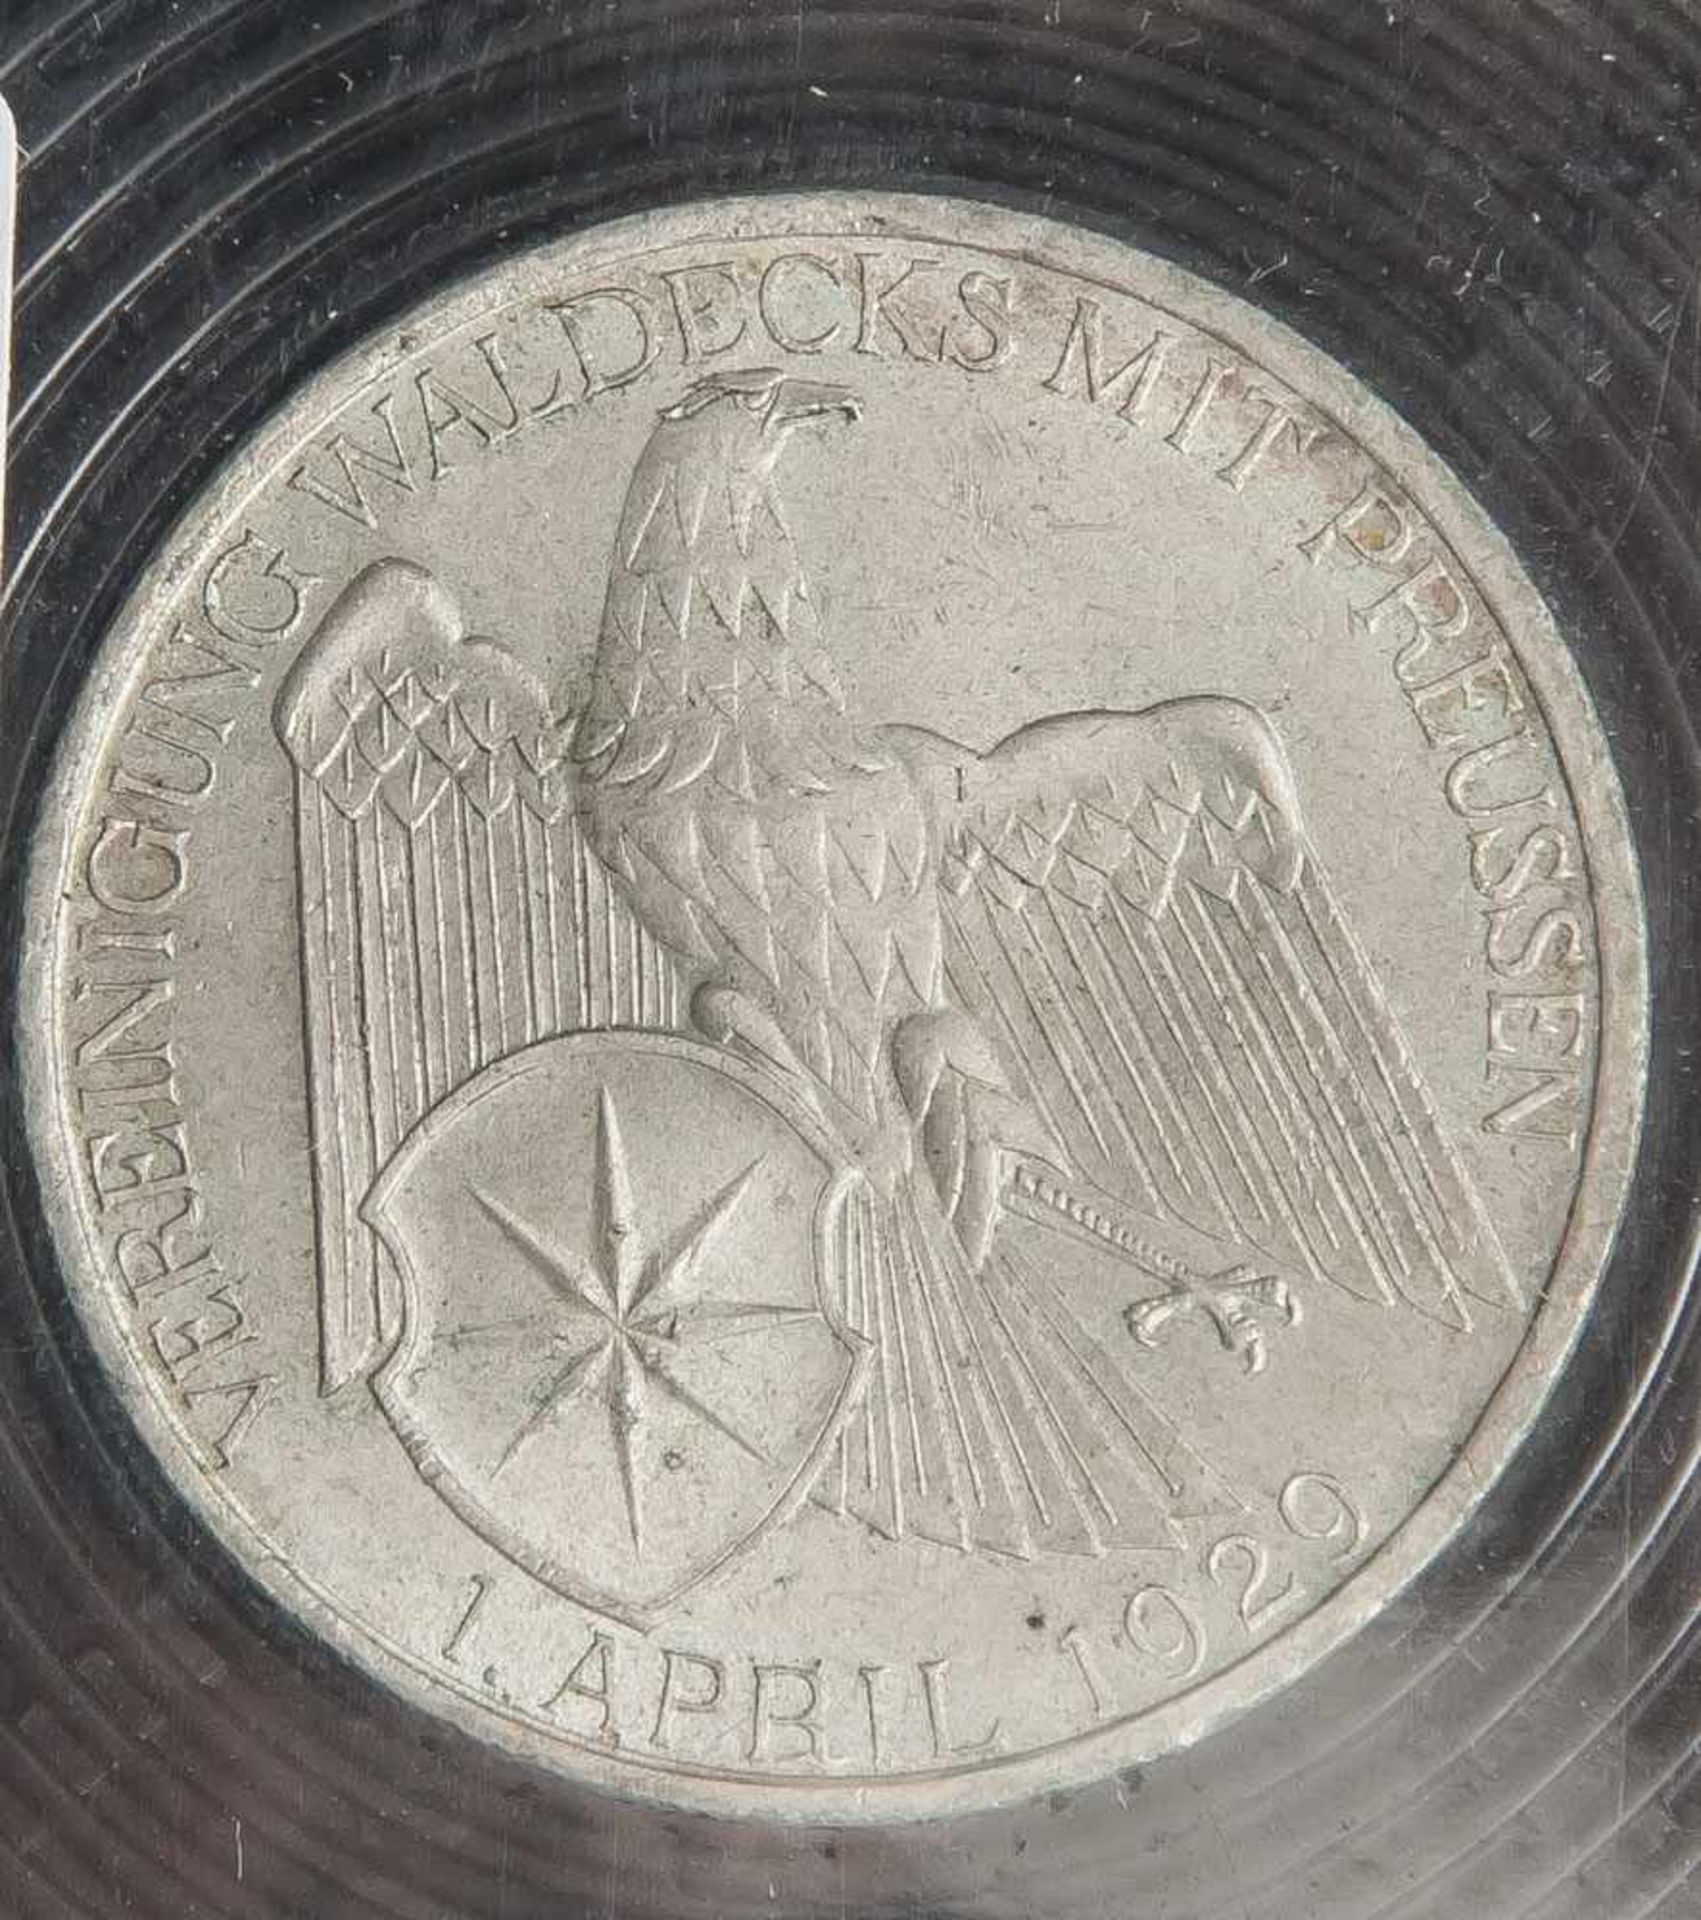 Seltene Münze, 3 Reichsmark, Vereinigung Waldecks, 1929.